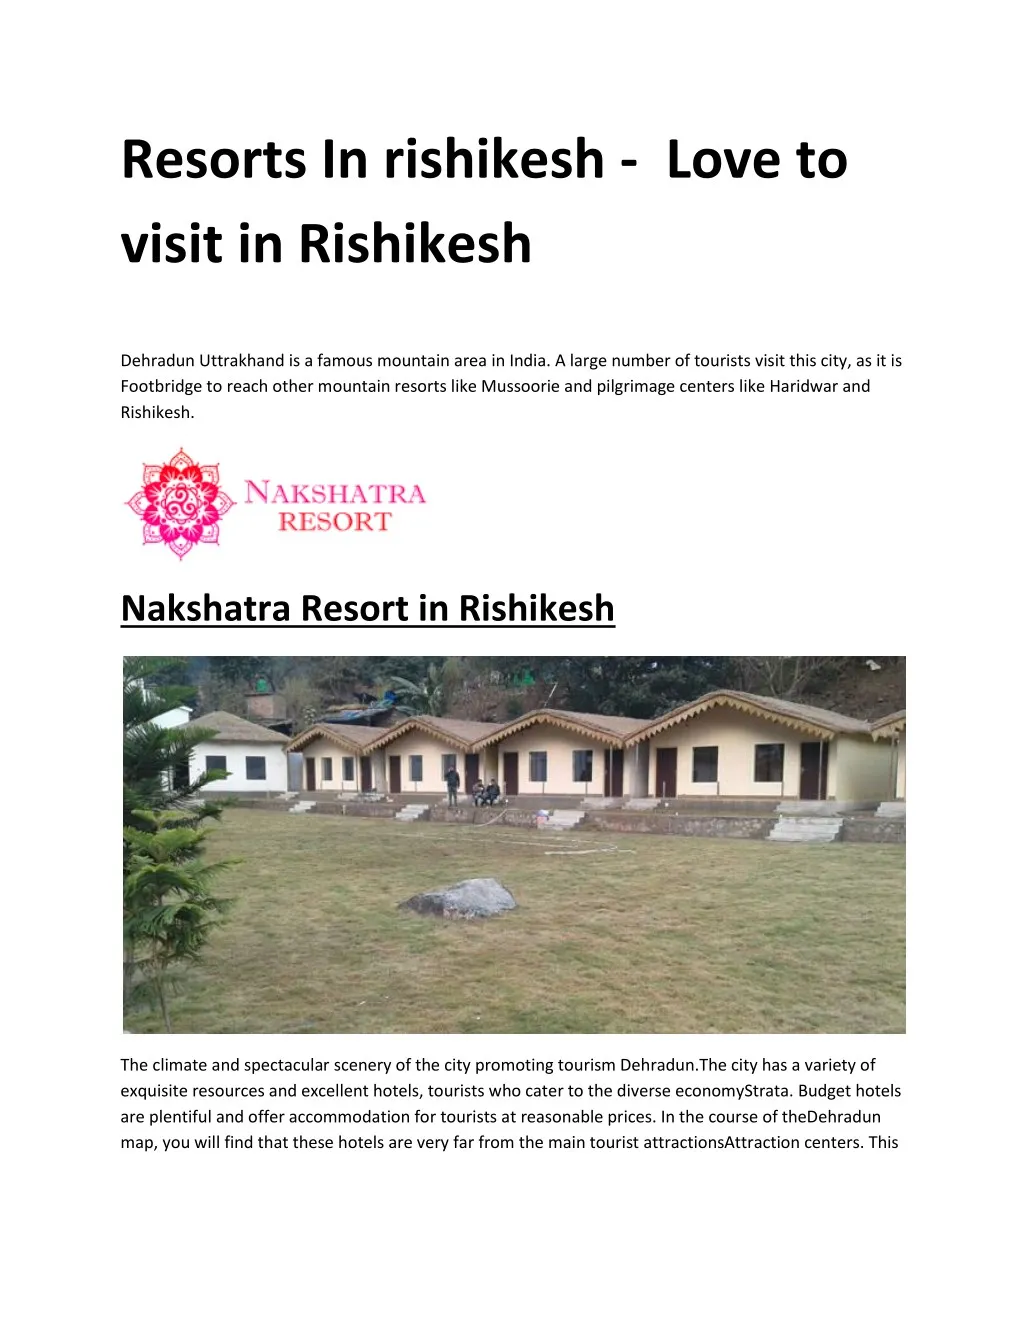 resorts in rishikesh love to visit in rishikesh